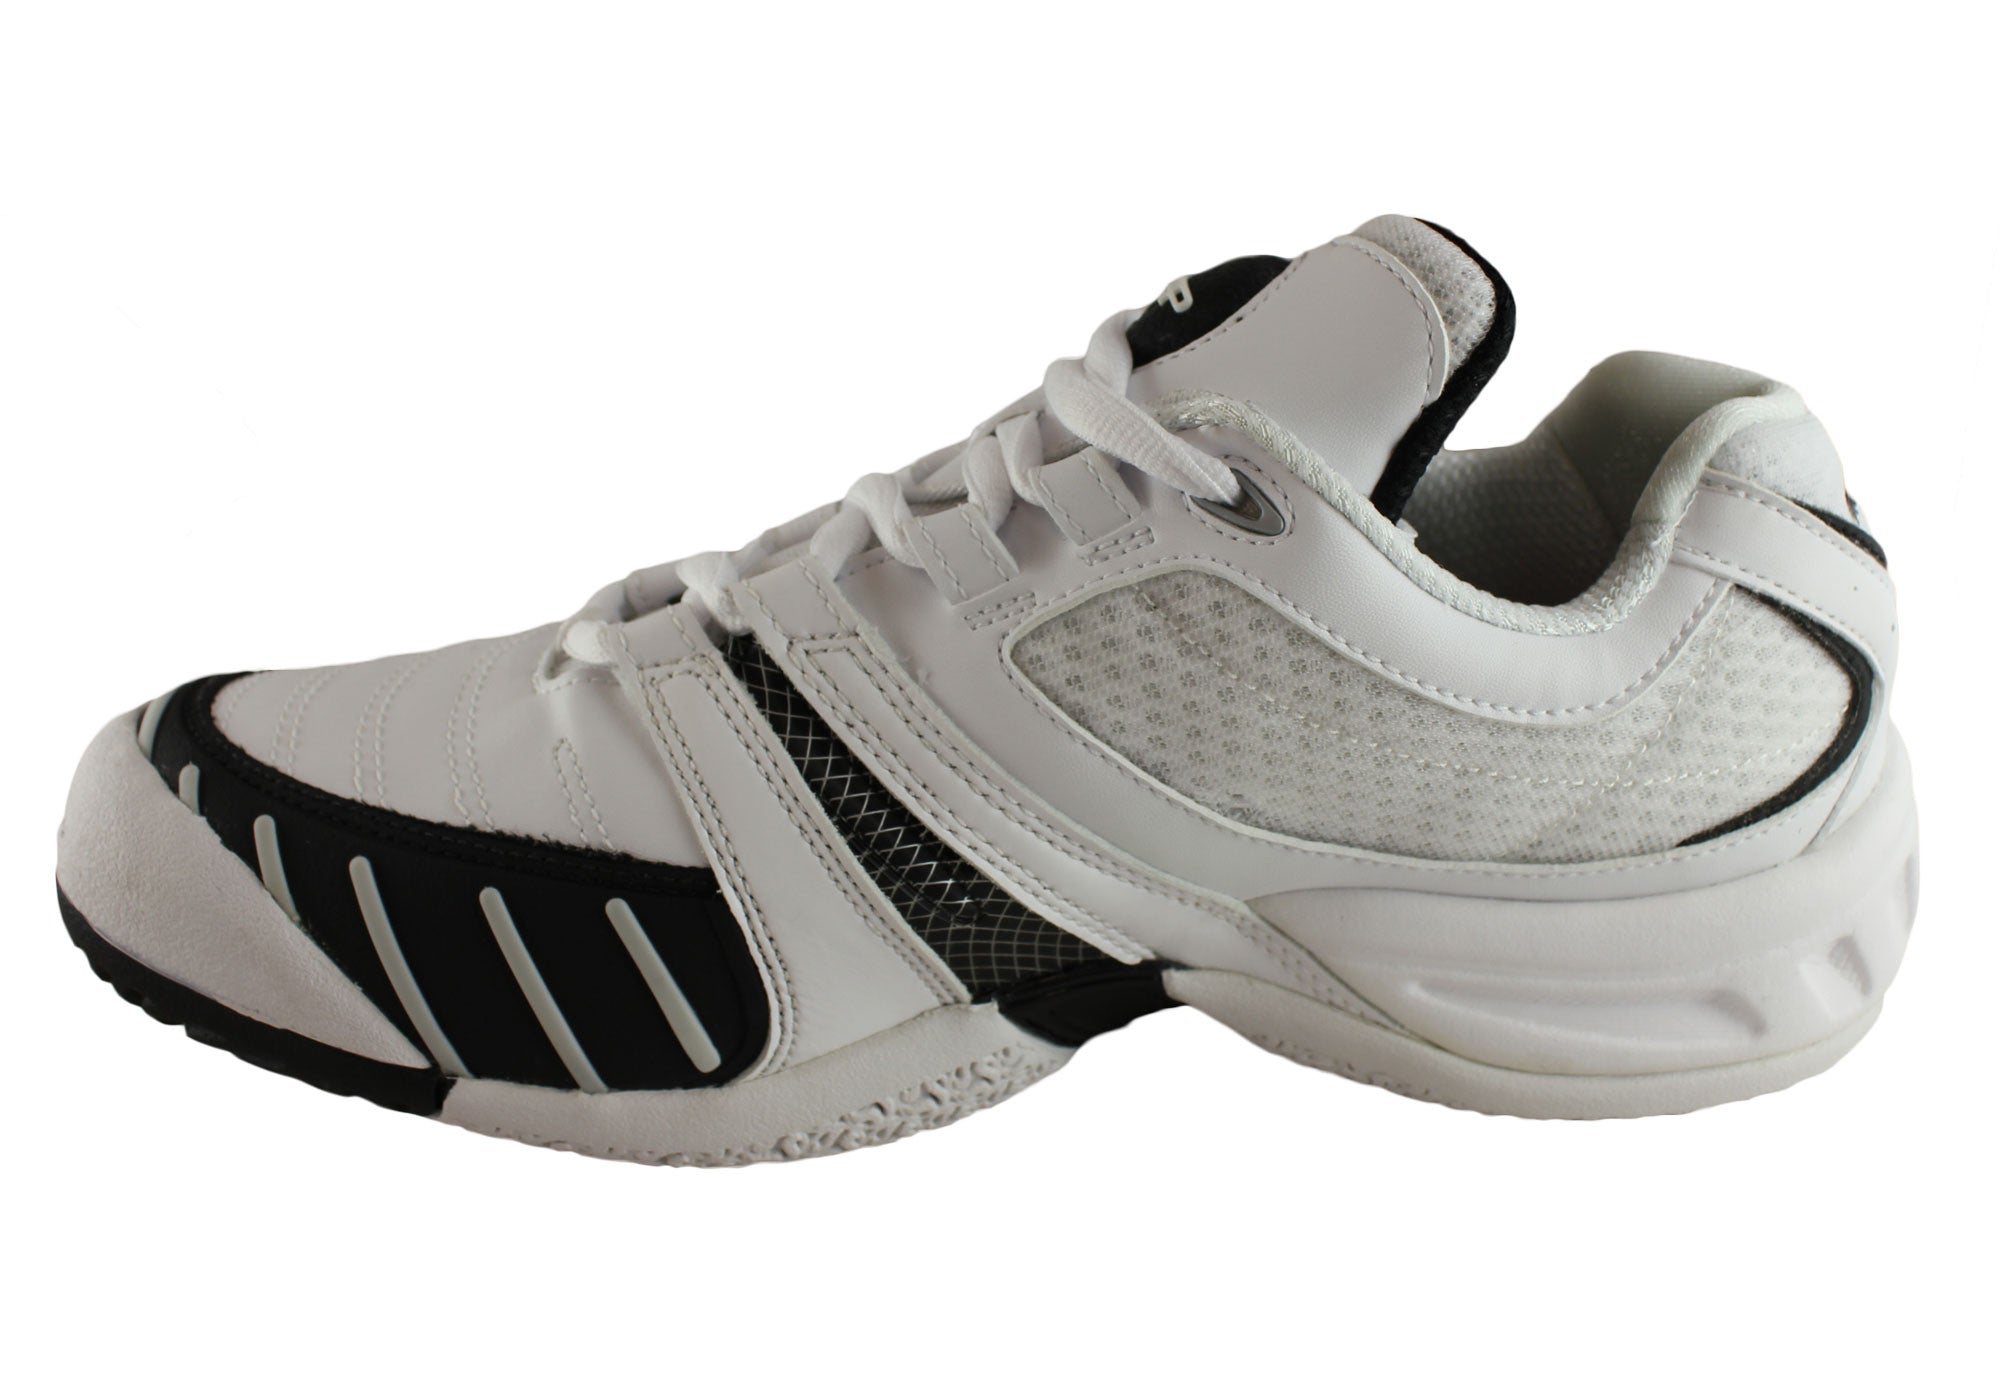 reebok kfs pump advantage white womens tennis shoes